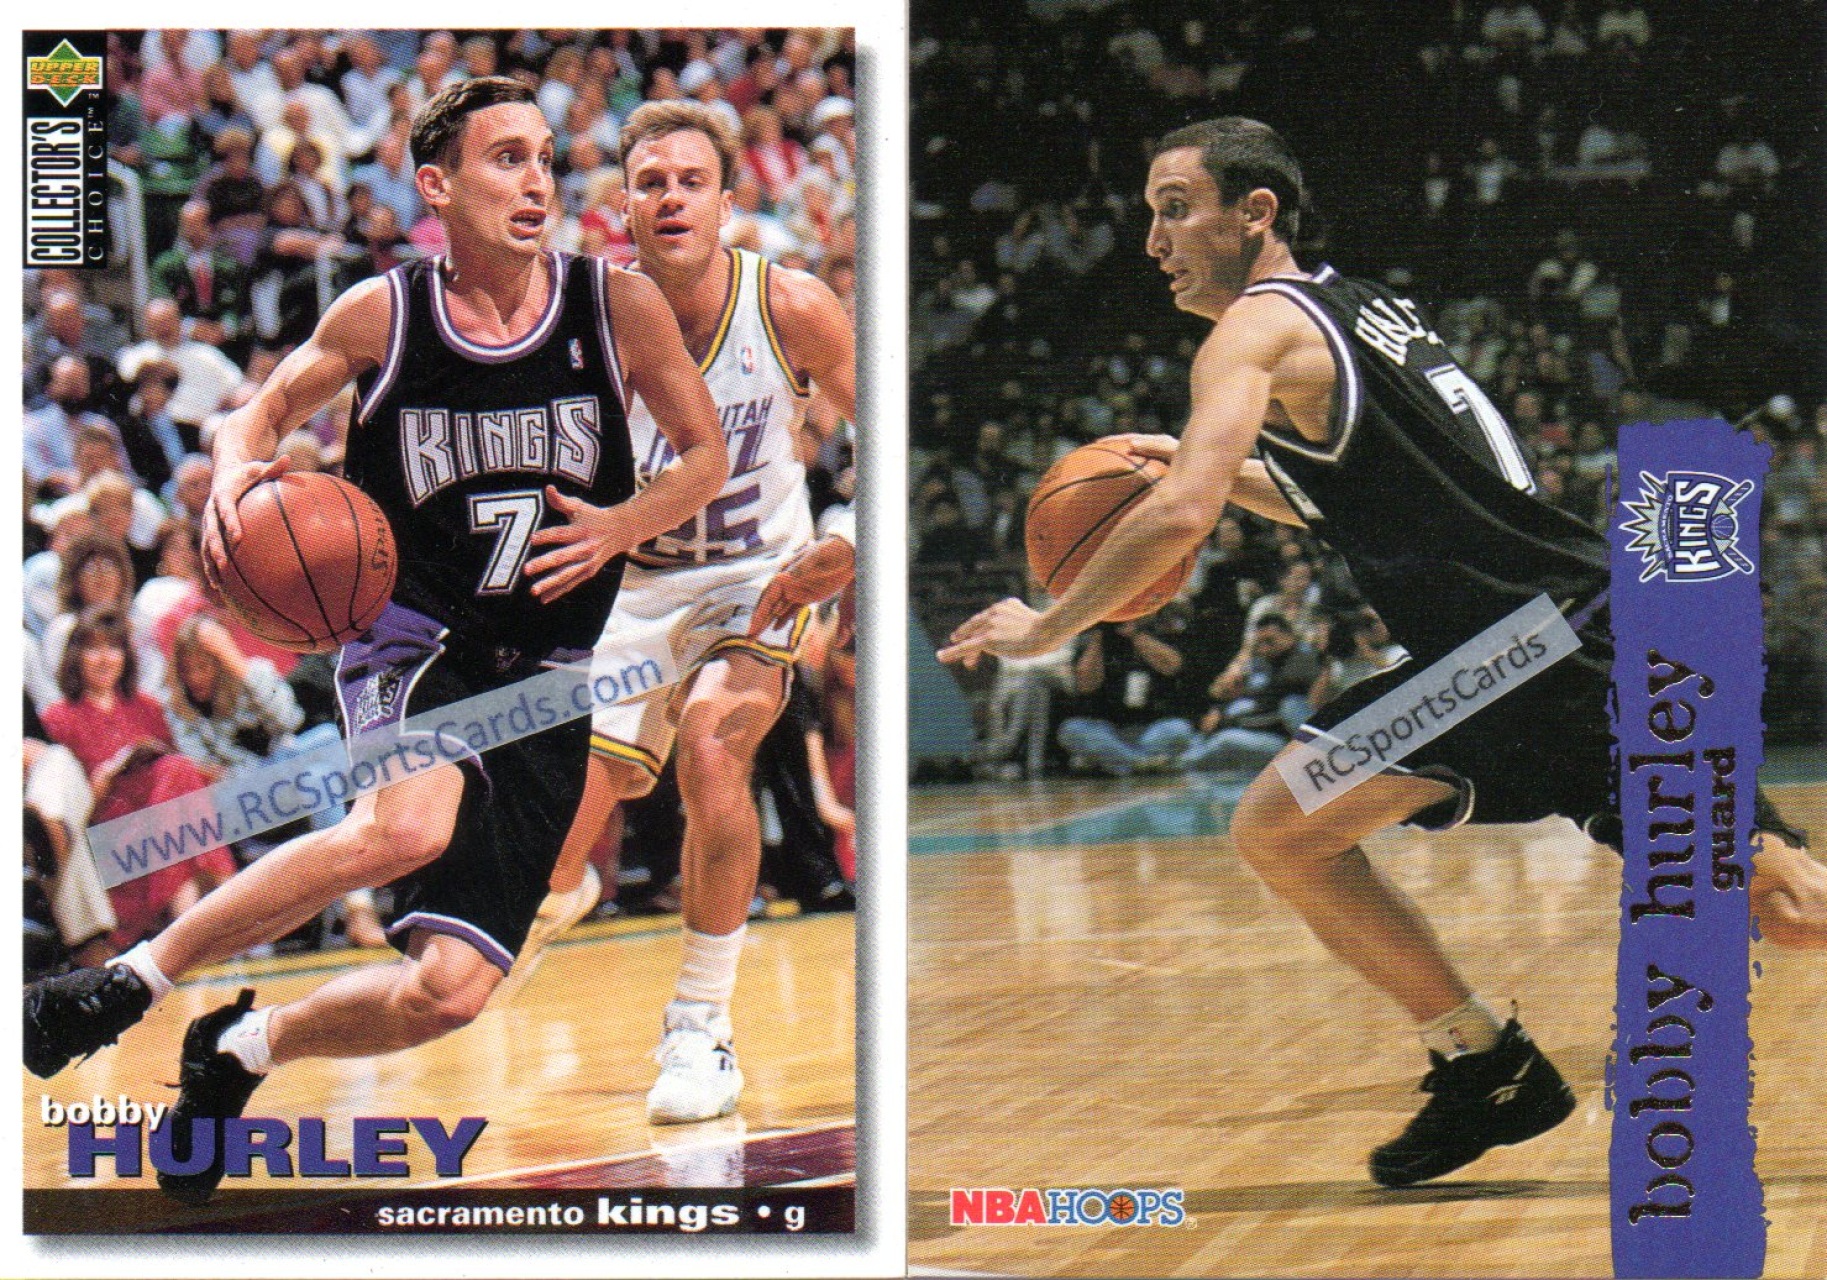  1994 Upper Deck # 77 Bobby Hurley Sacramento Kings